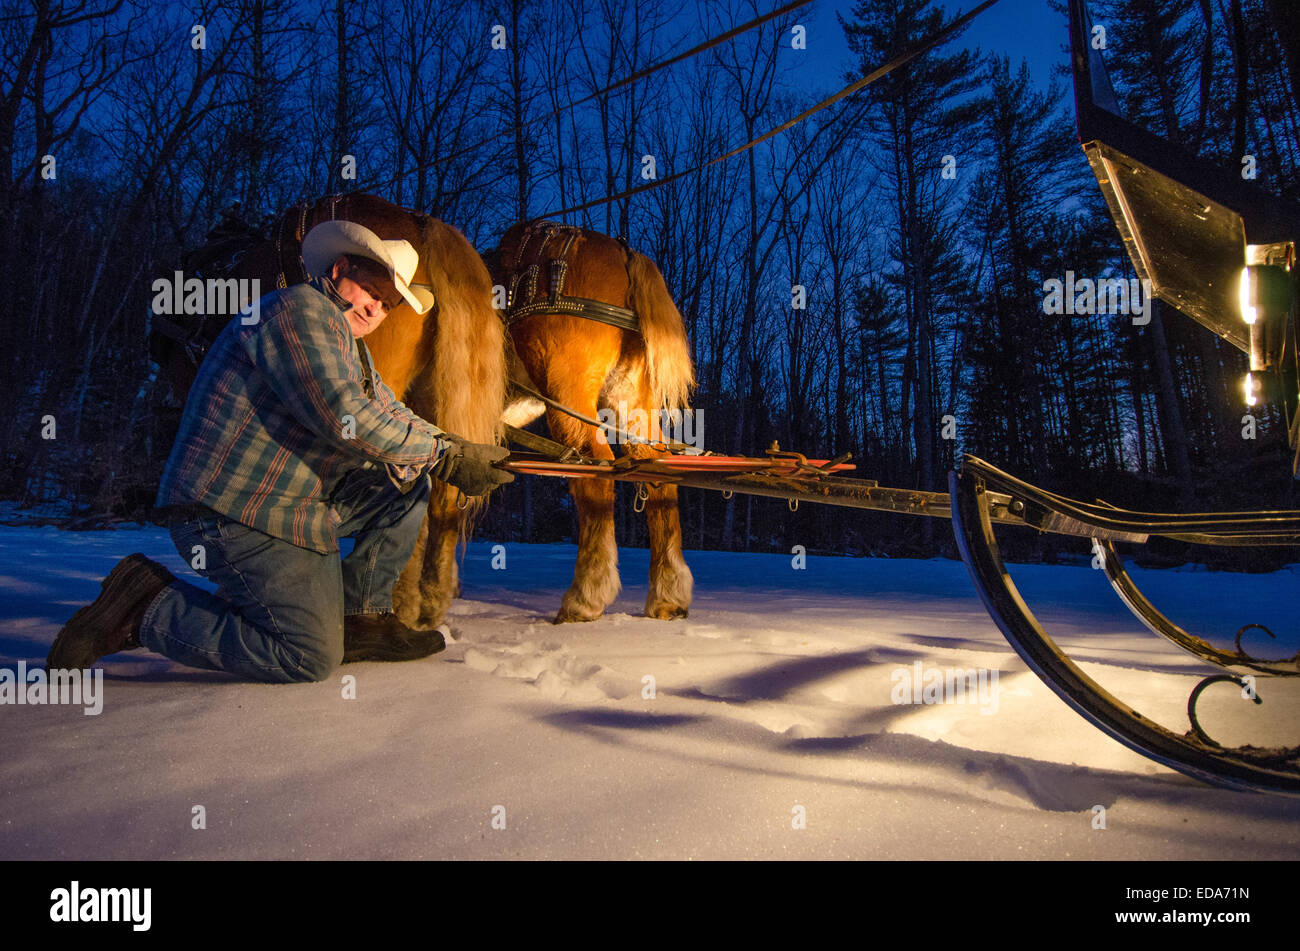 Un cowboy prépare un trajet en carriole dans les forêts du New Hampshire. Banque D'Images